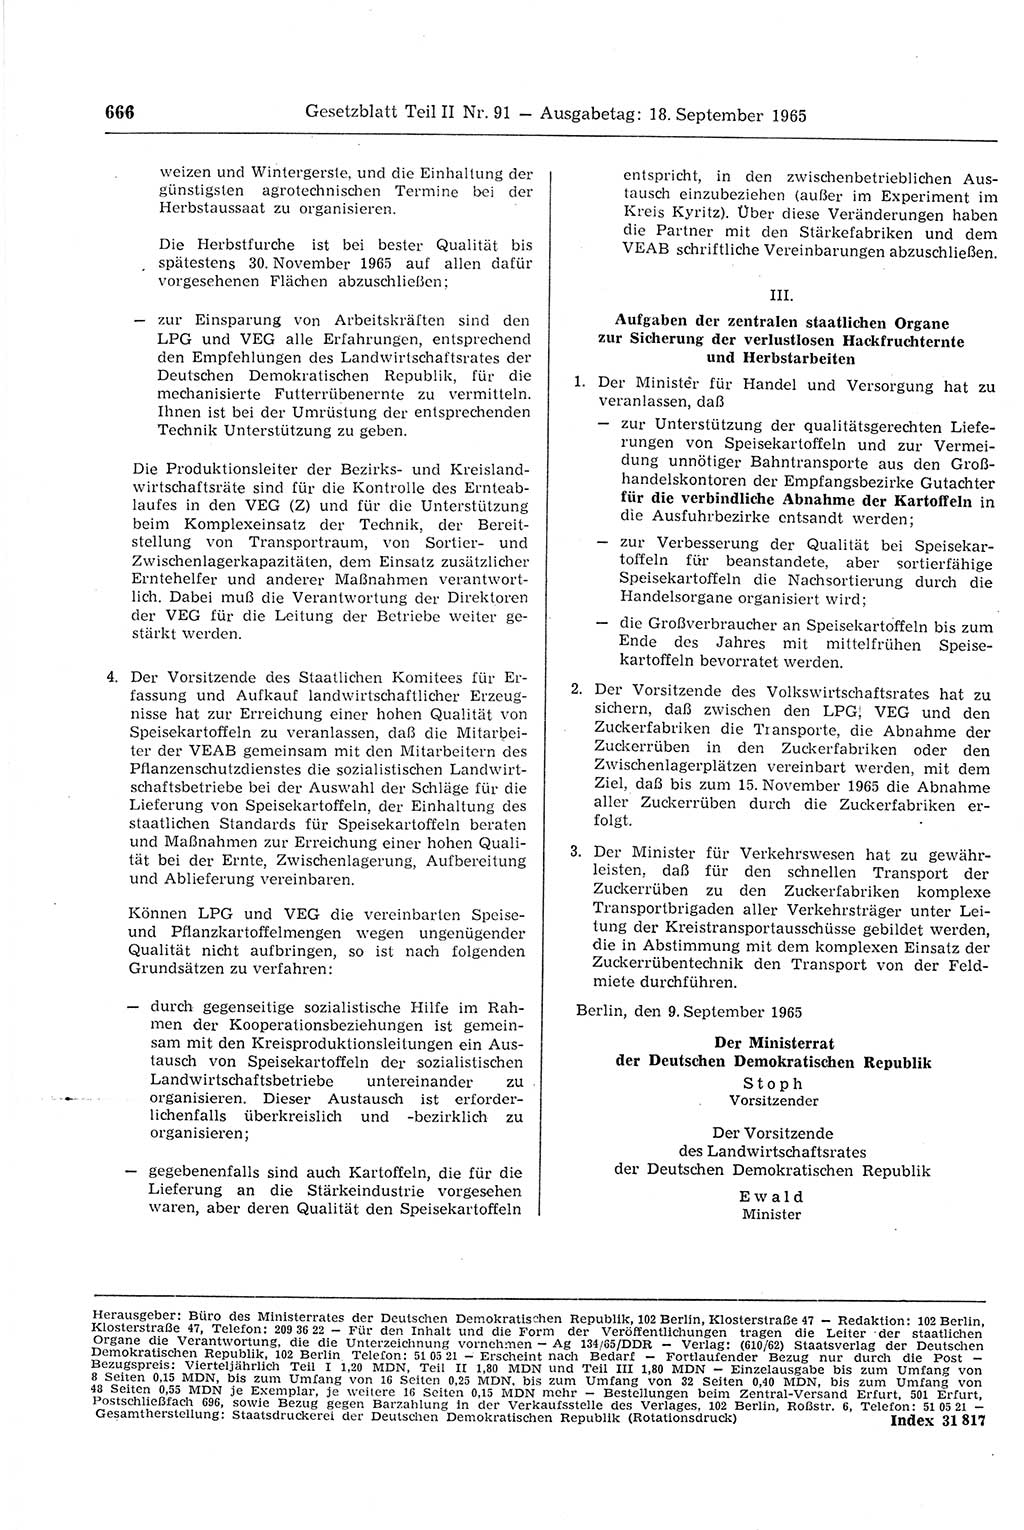 Gesetzblatt (GBl.) der Deutschen Demokratischen Republik (DDR) Teil ⅠⅠ 1965, Seite 666 (GBl. DDR ⅠⅠ 1965, S. 666)